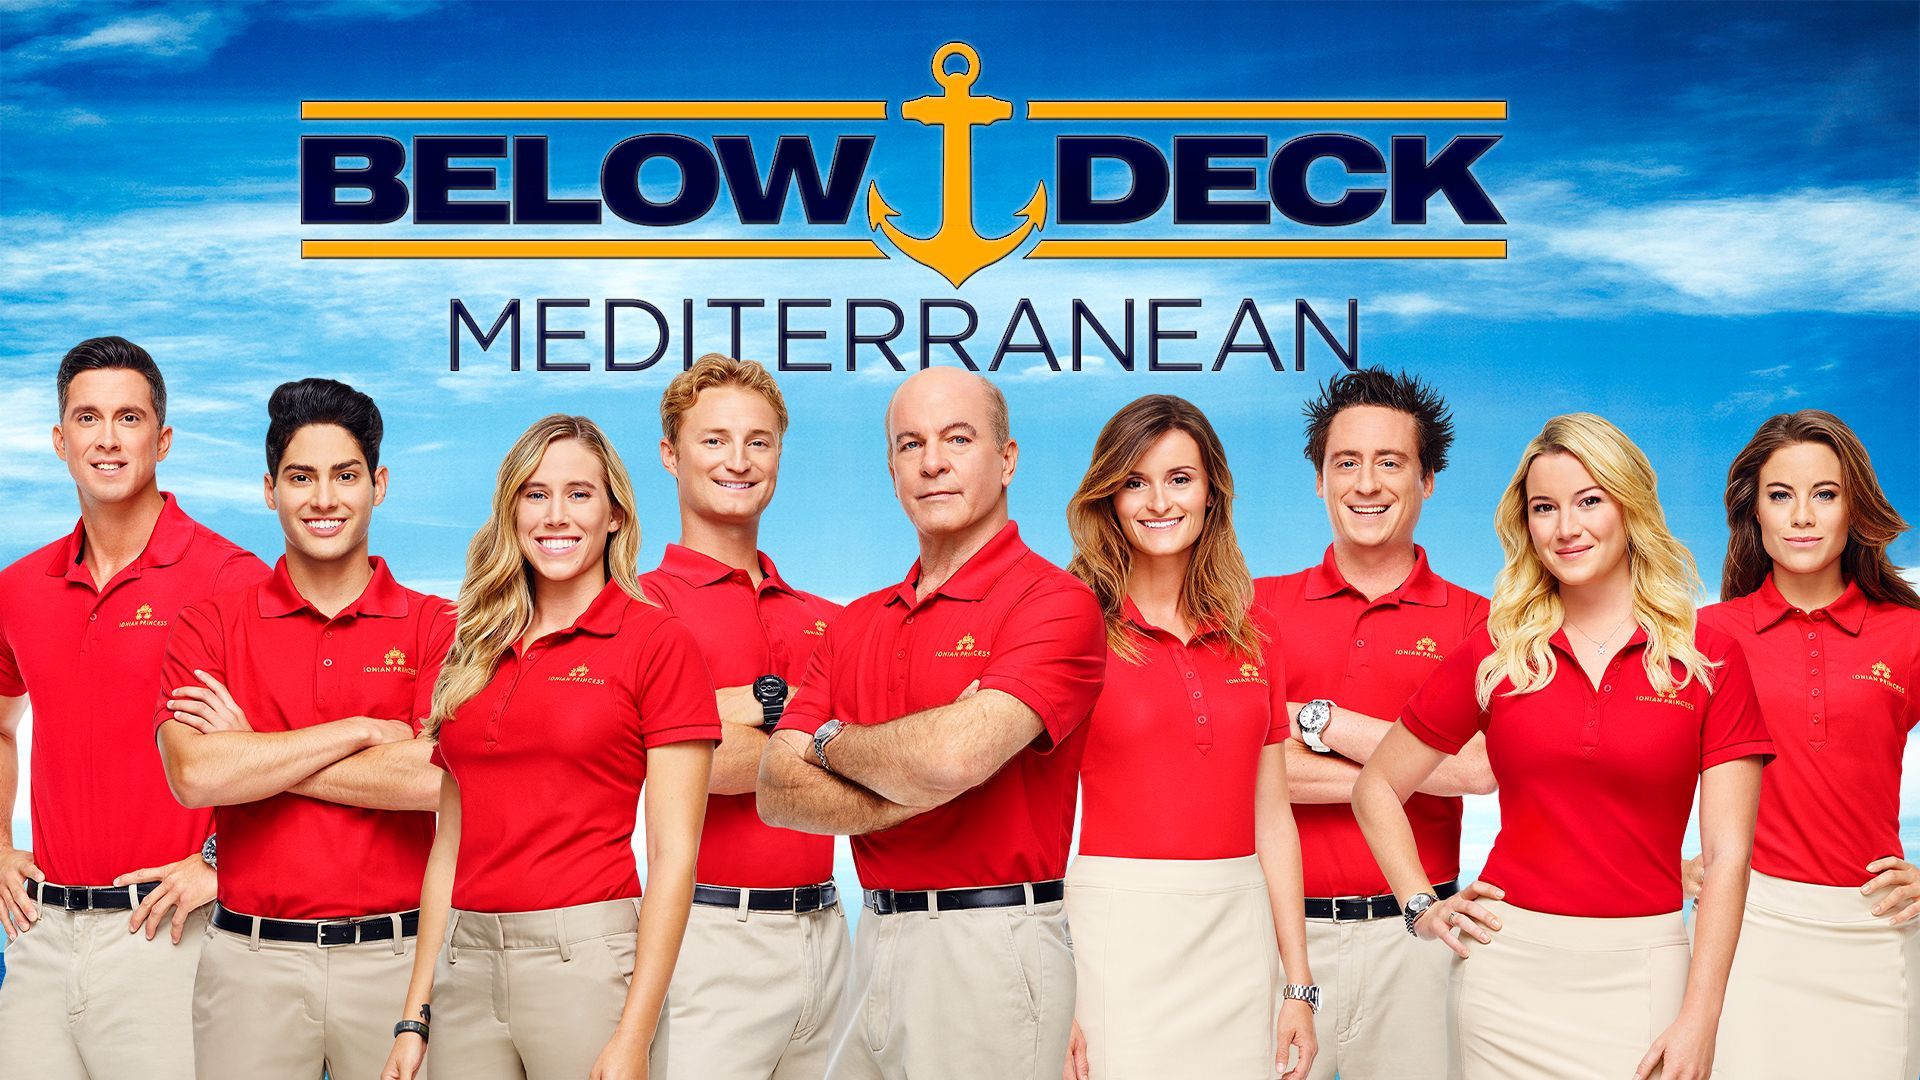 Below deck mediterranean twitter